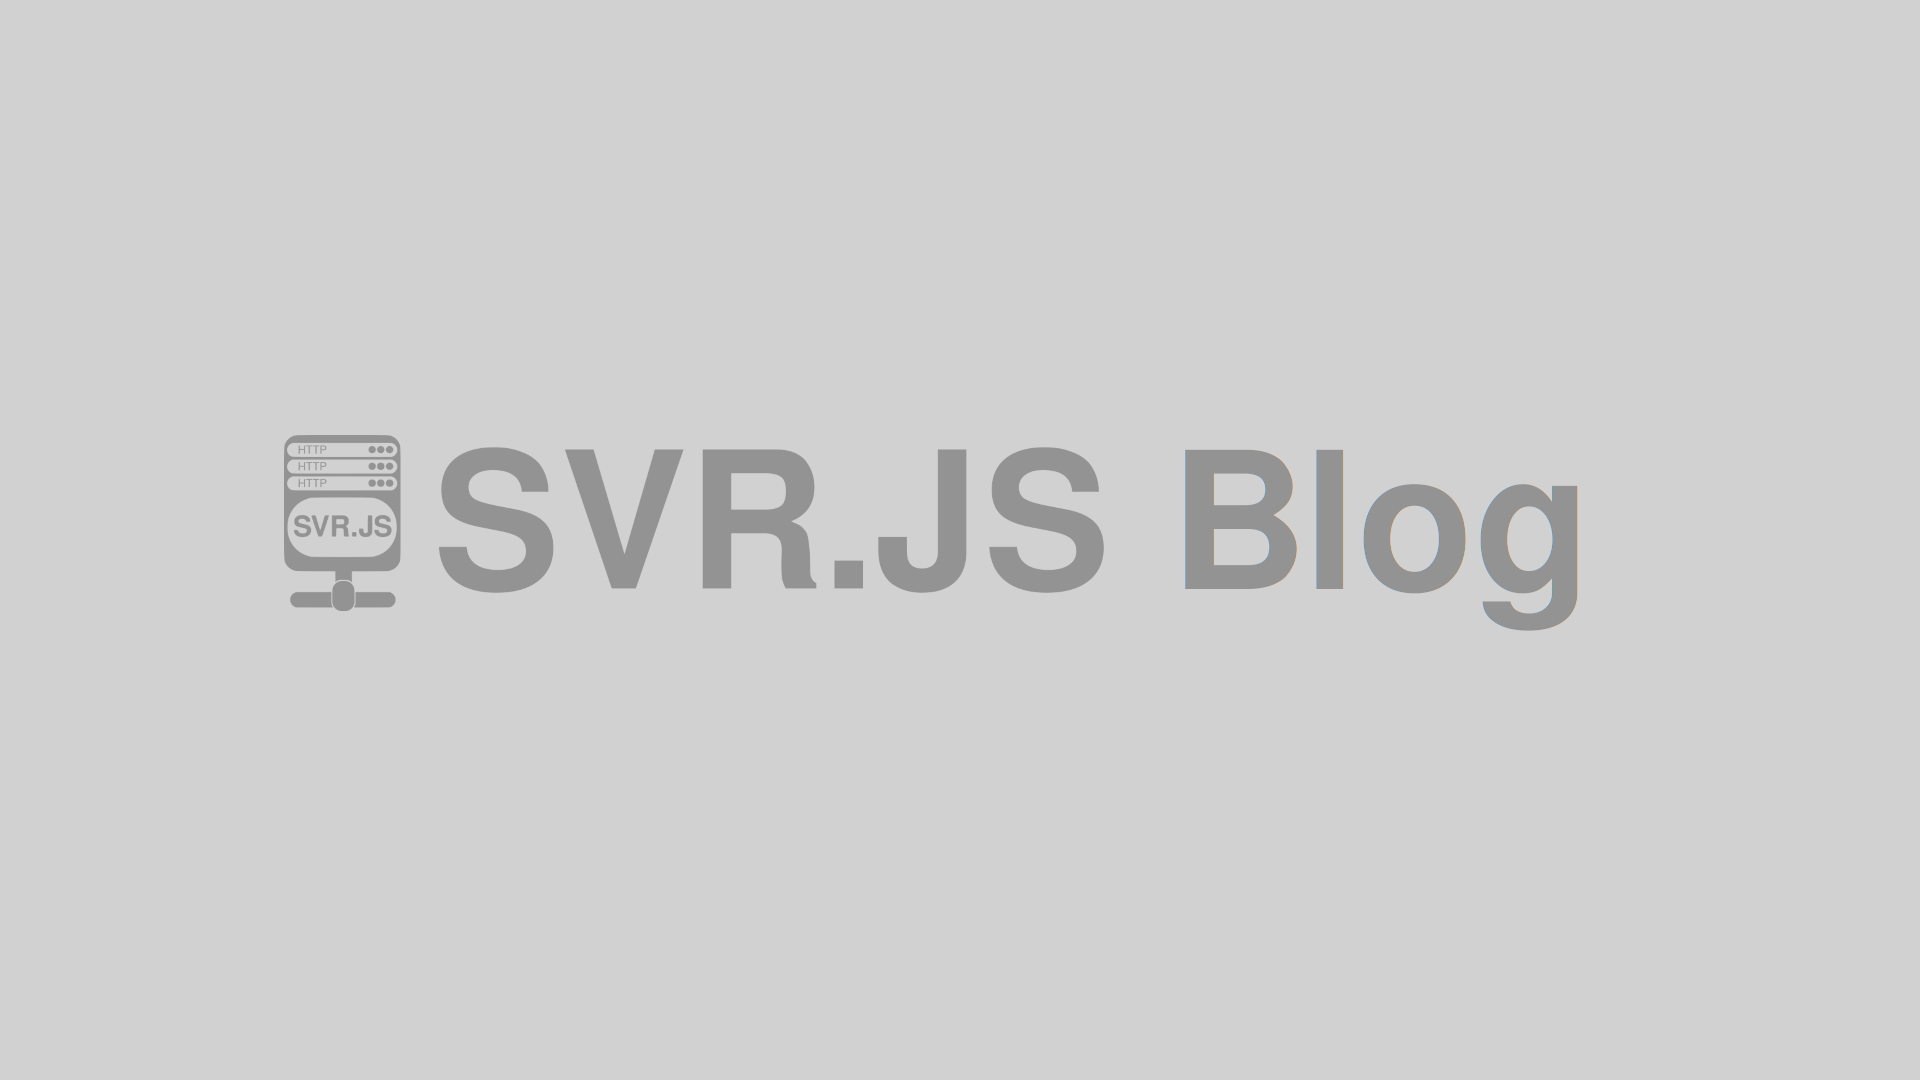 SVR.JS Blog created!